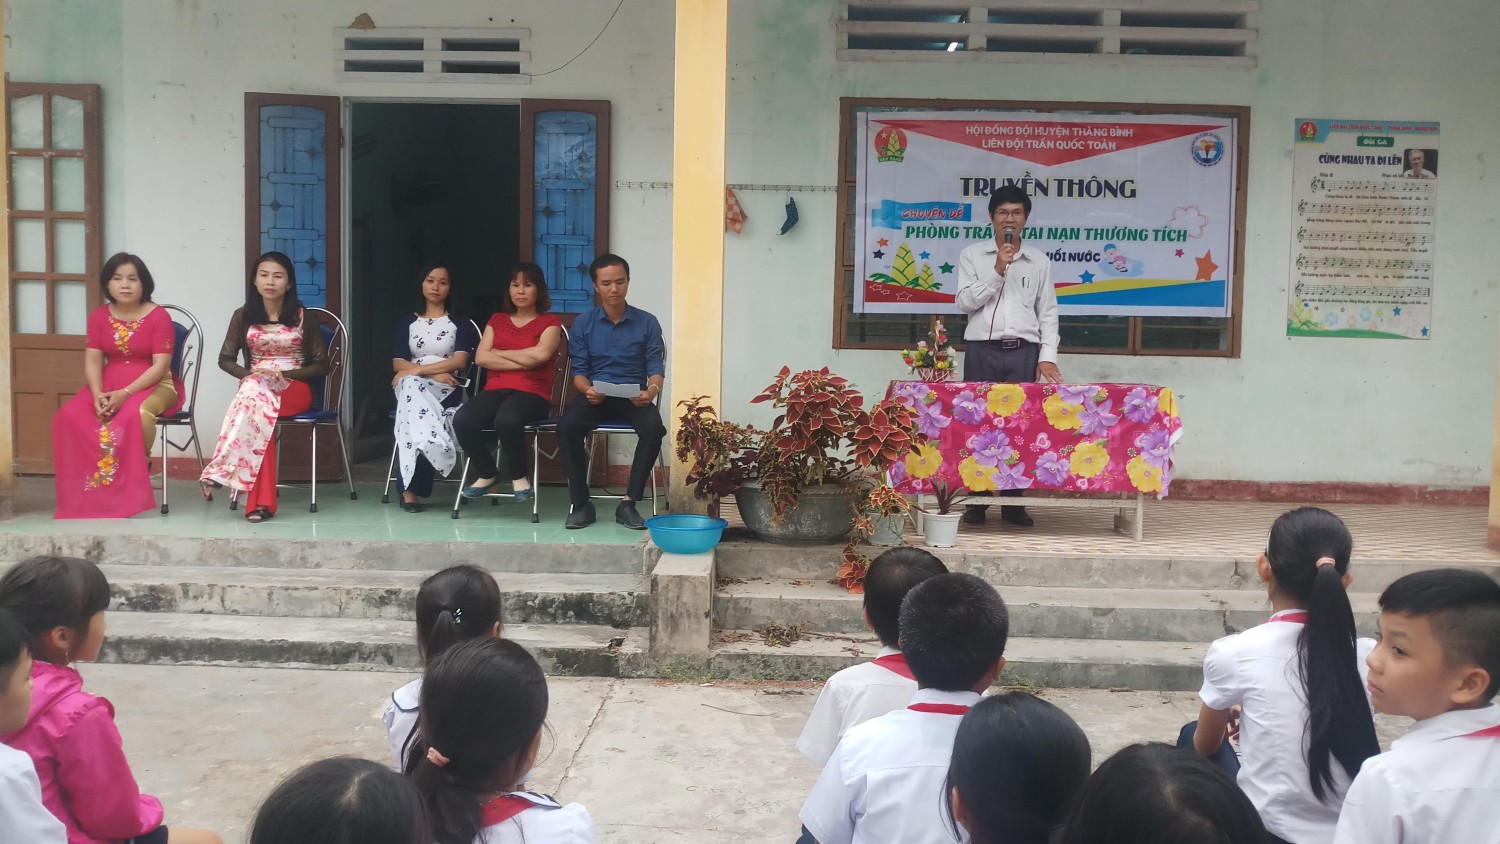 Thầy giáo Hiệu trưởng Nguyễn Lượm cũng rất quan tâm và trực tiếp chỉ đạo hoạt động này